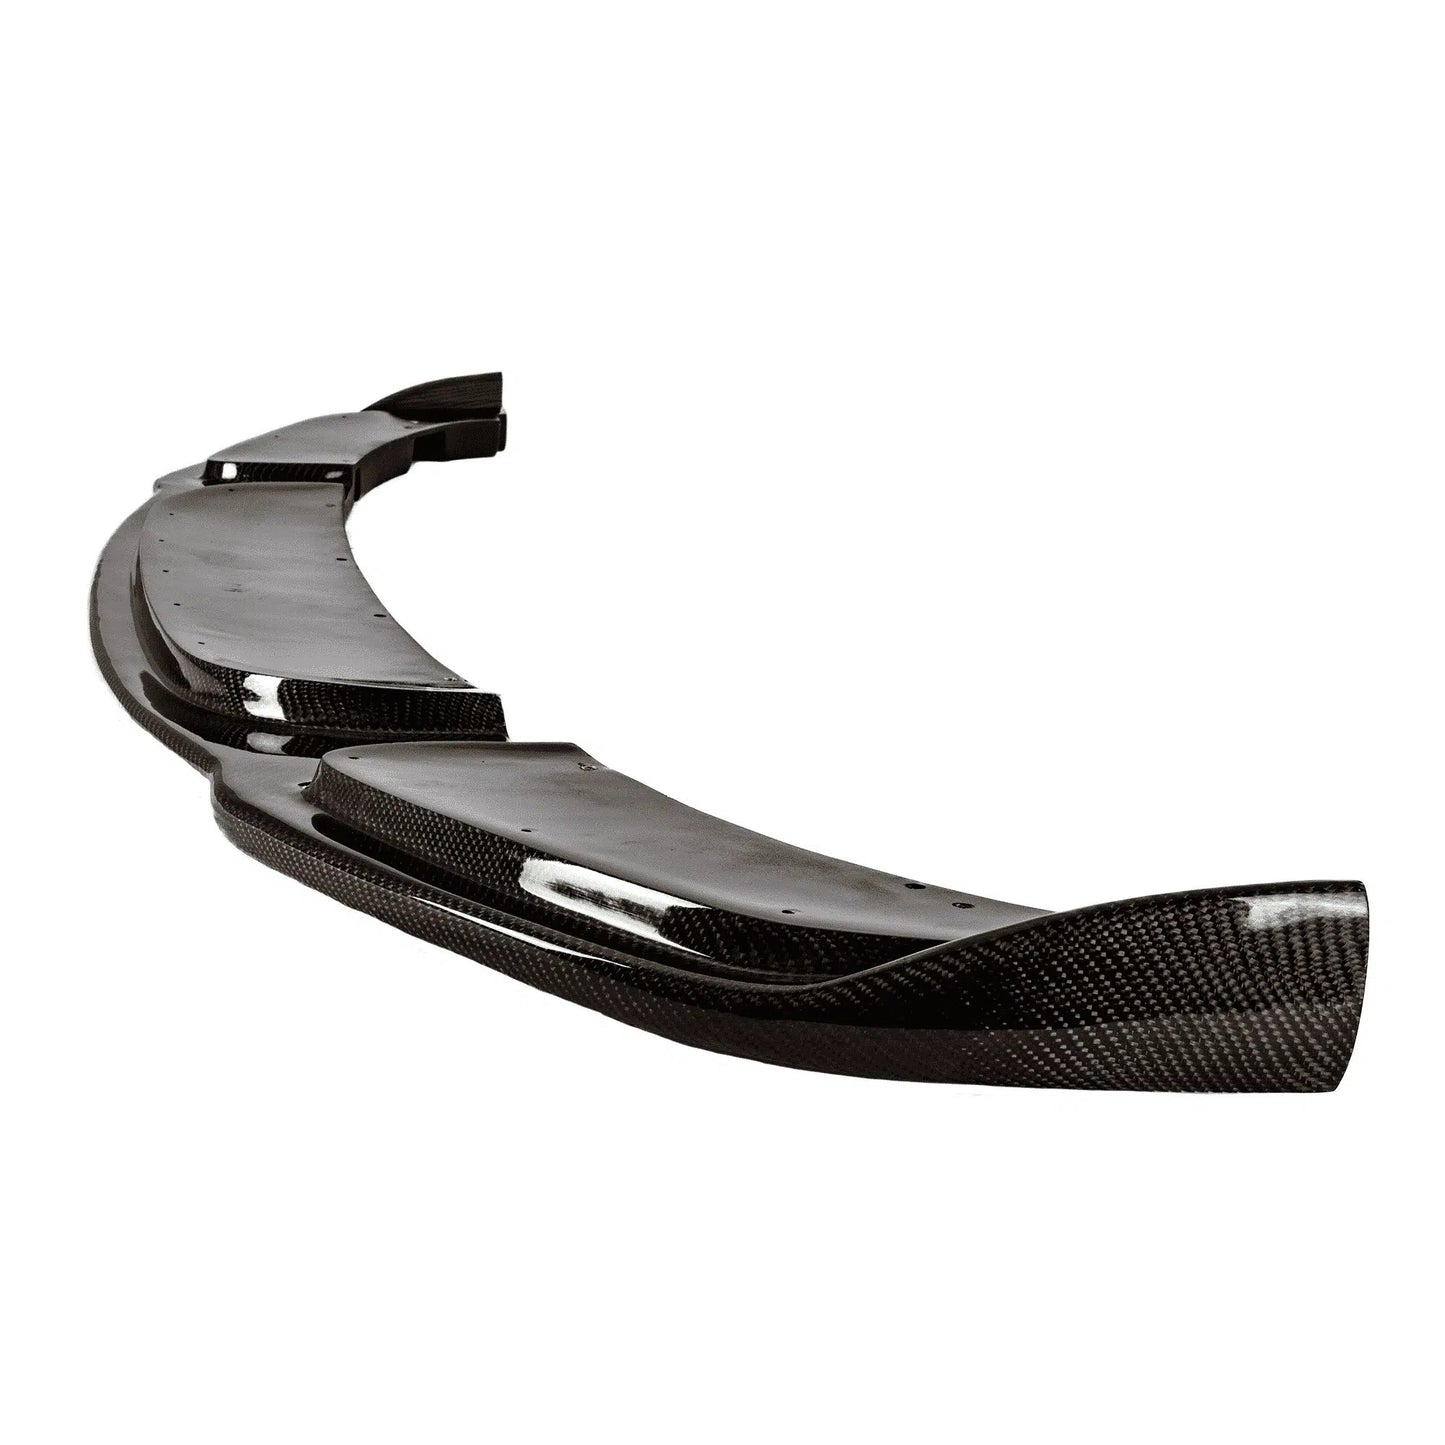 Suvneer R1 Designed F10 M Sport Carbon Fiber Front Lip